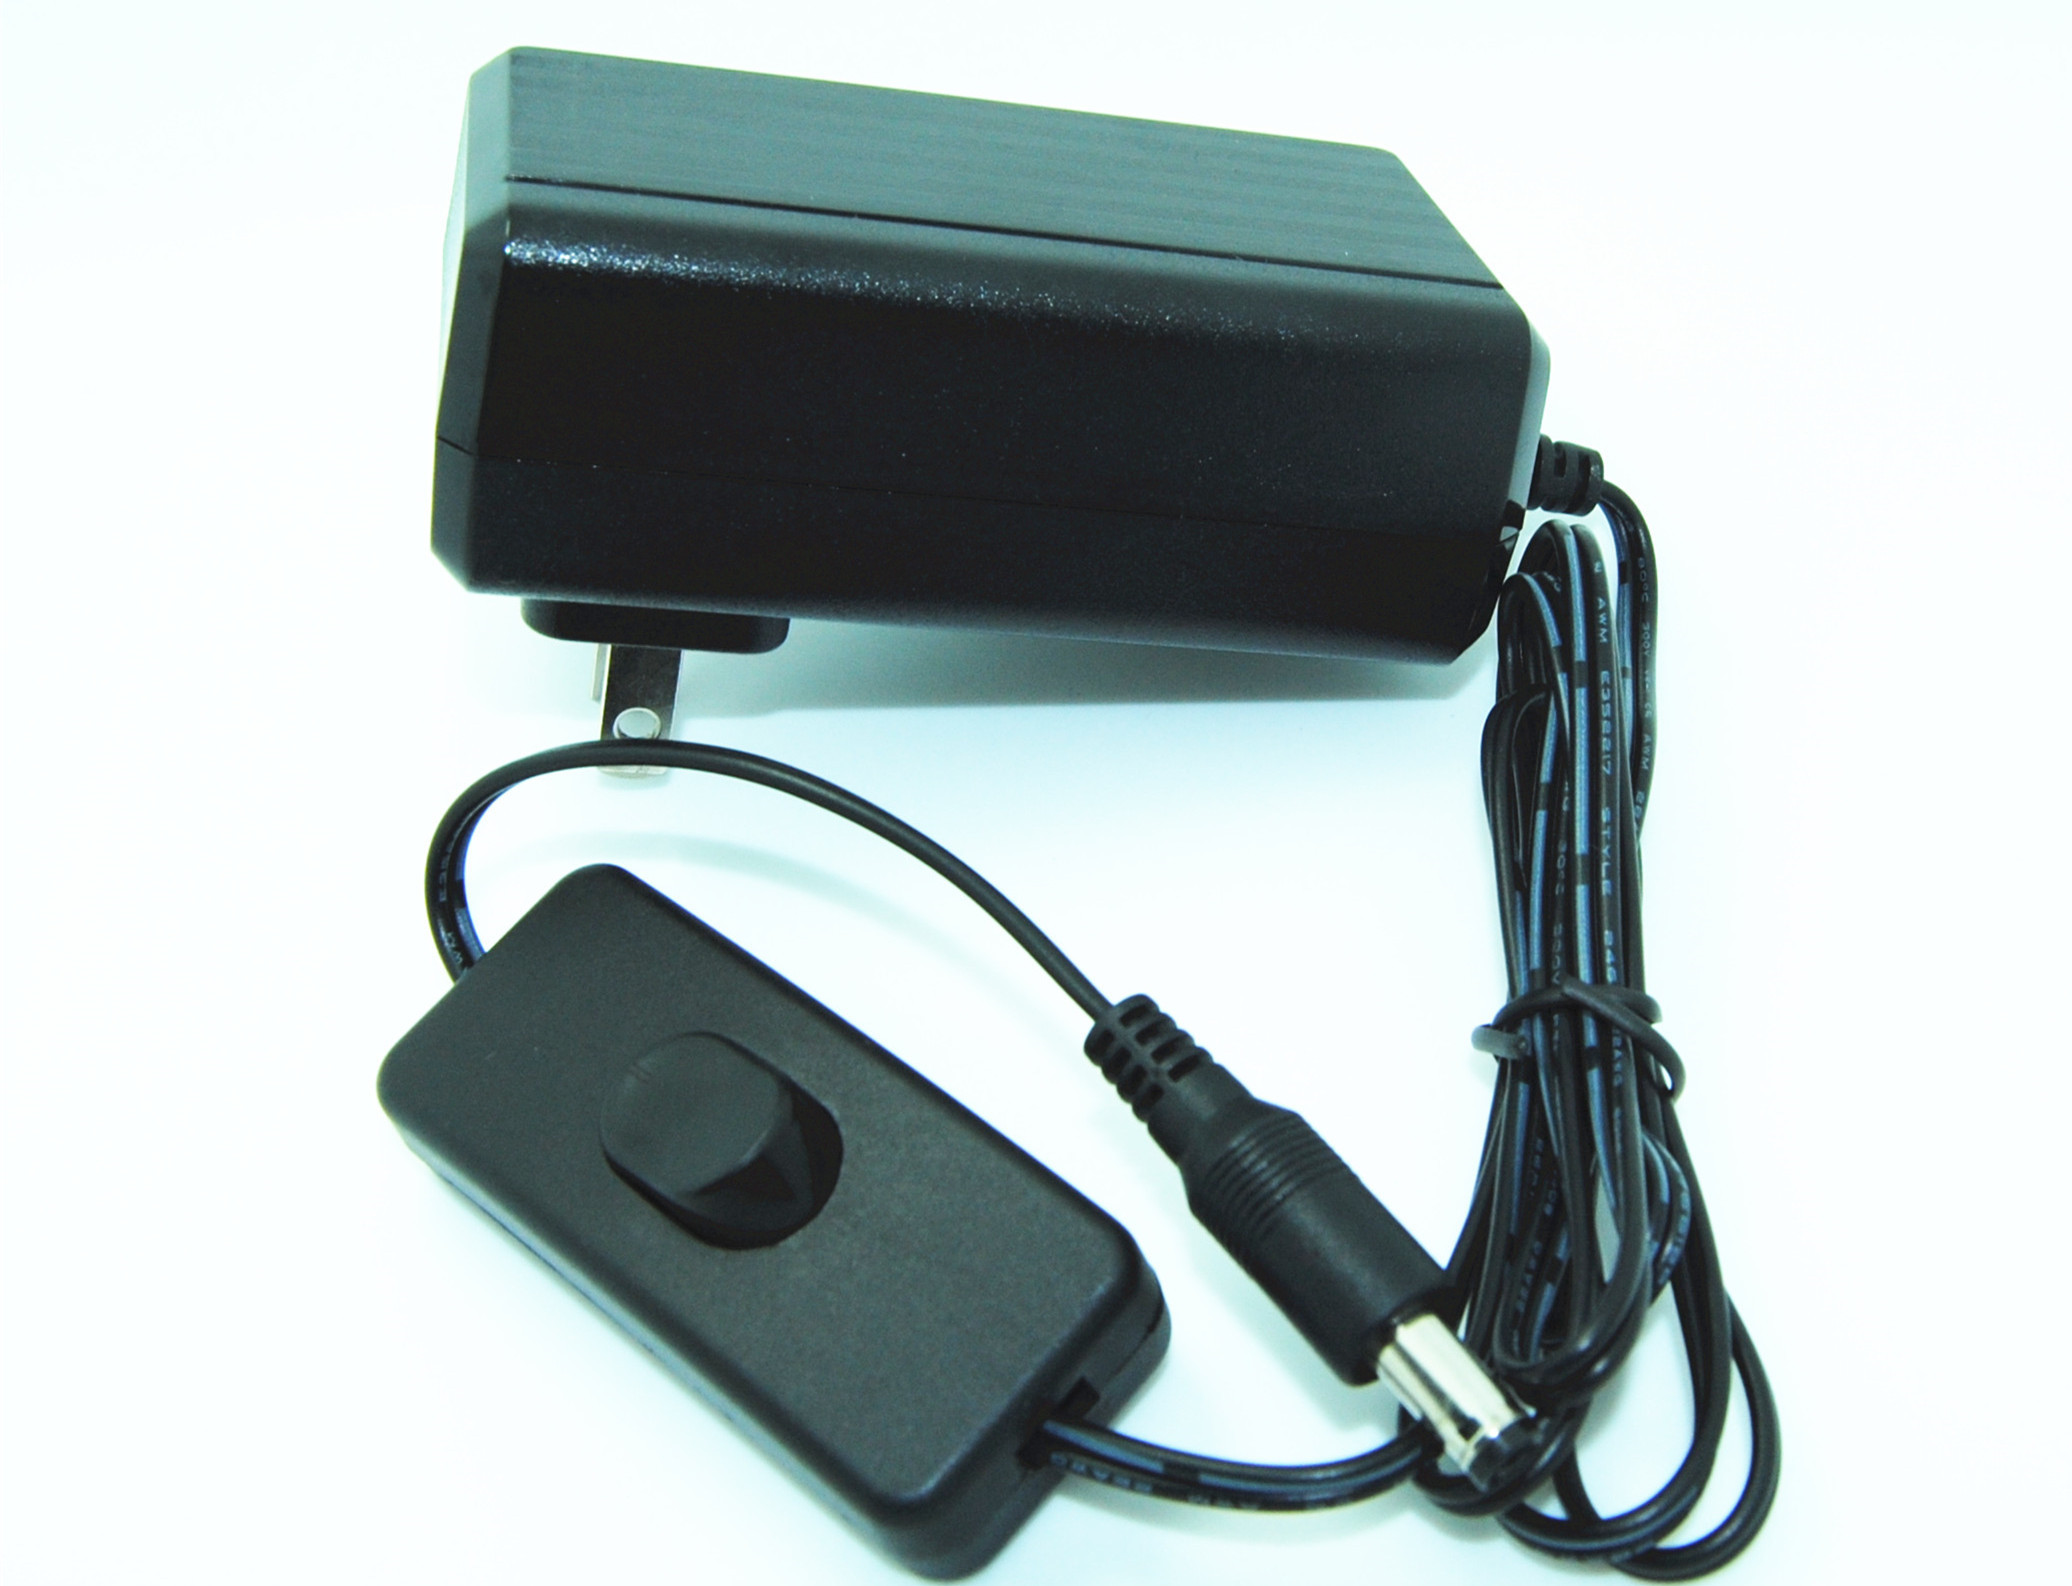 آمریکا 2 پین DC منبع تغذیه سوئیچینگ آداپتور برای PC دوربین های مدار بسته / قرص